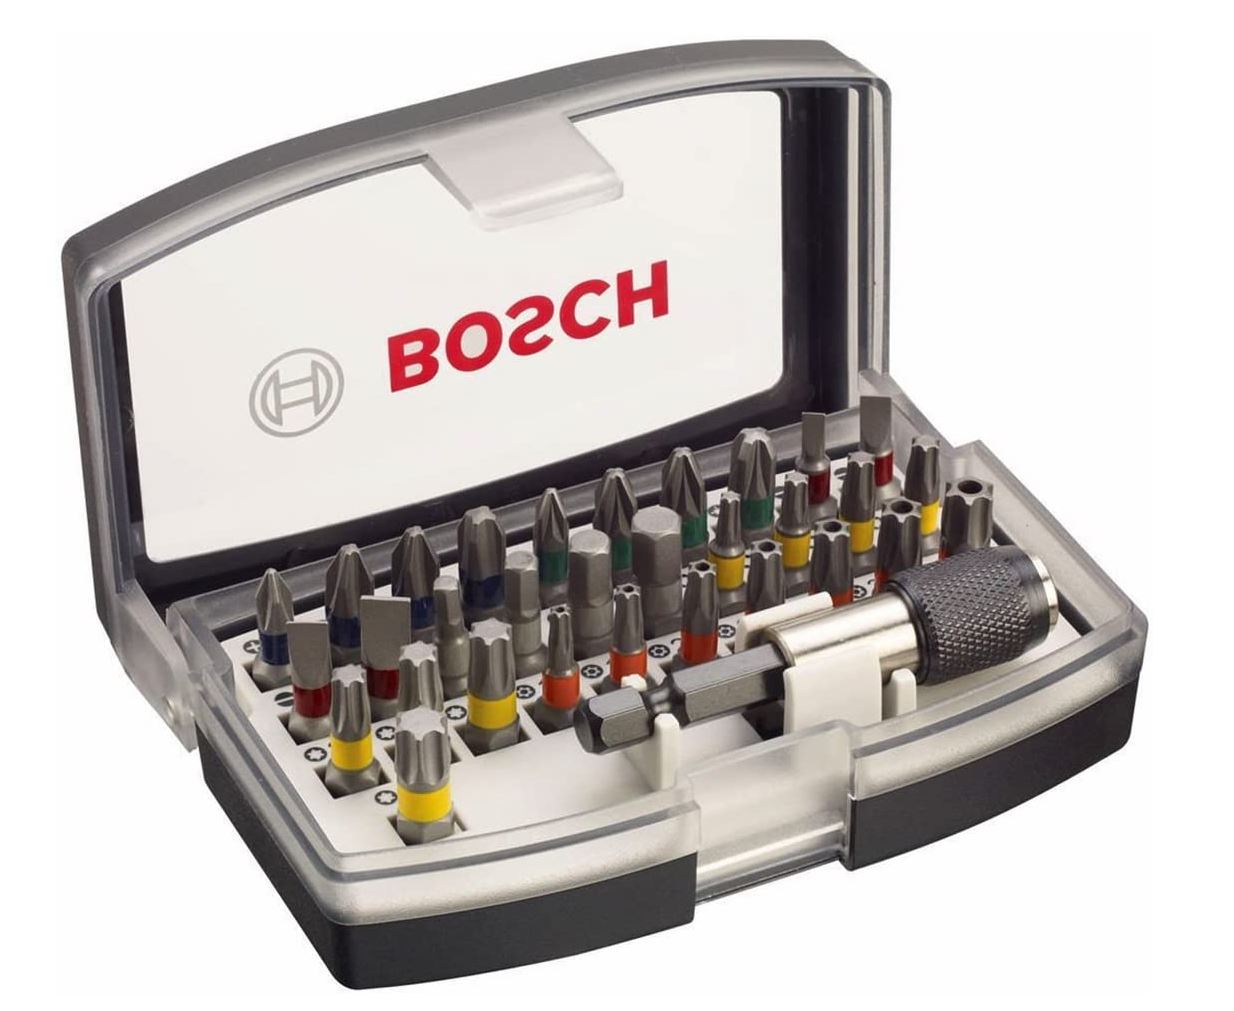 32-teiliges Bosch Professional Schrauberbit-Set für nur 9,95€ (statt 12,52€) – Prime